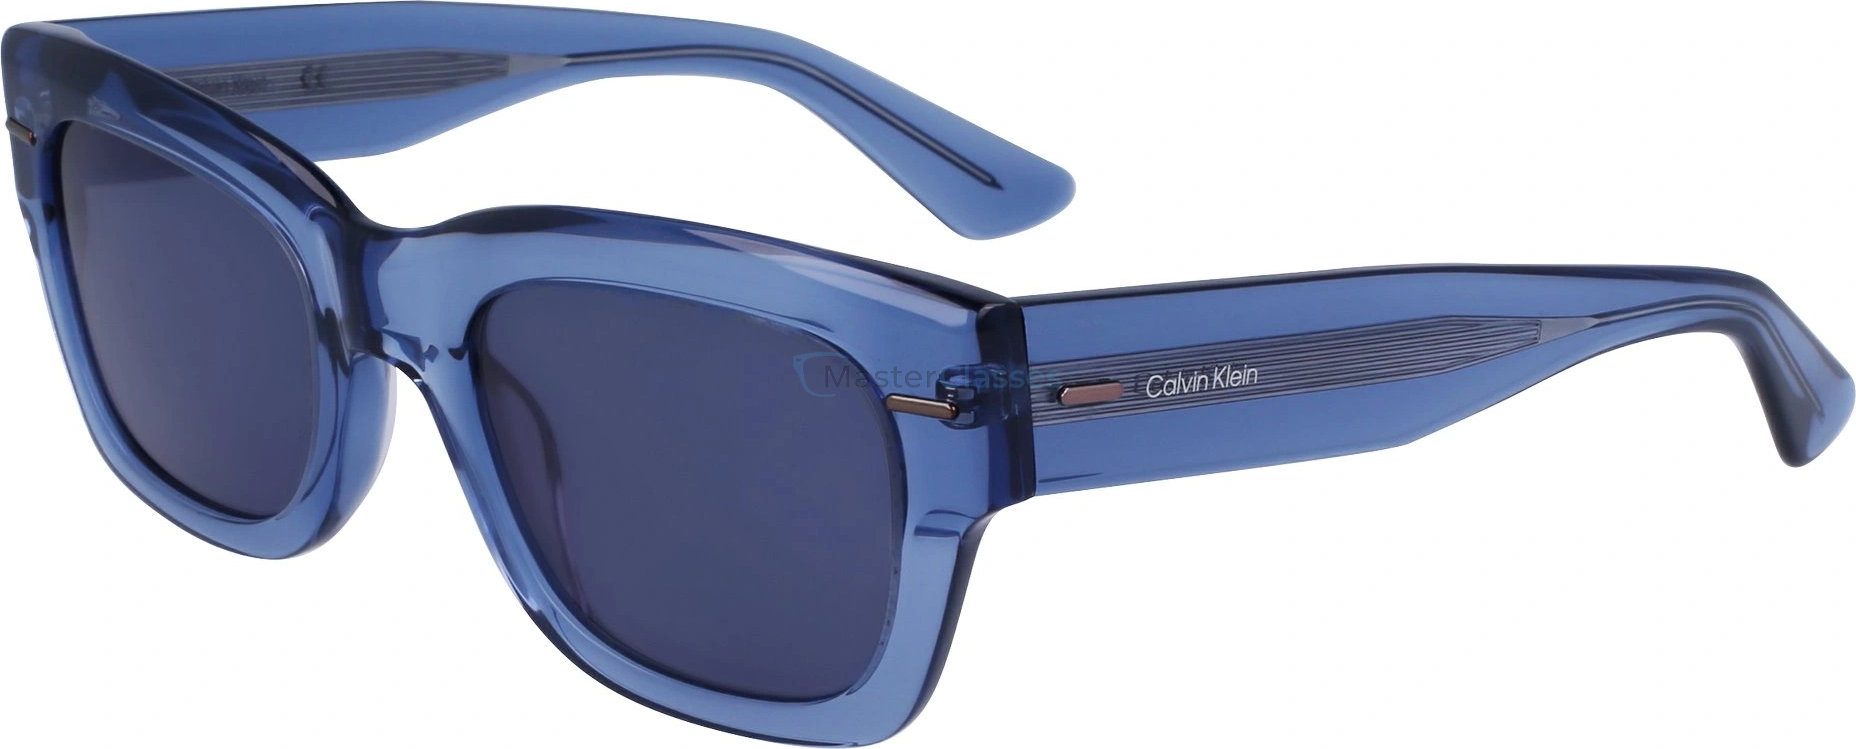   CALVIN KLEIN CK23509S 438,  BLUE, DARK BLUE